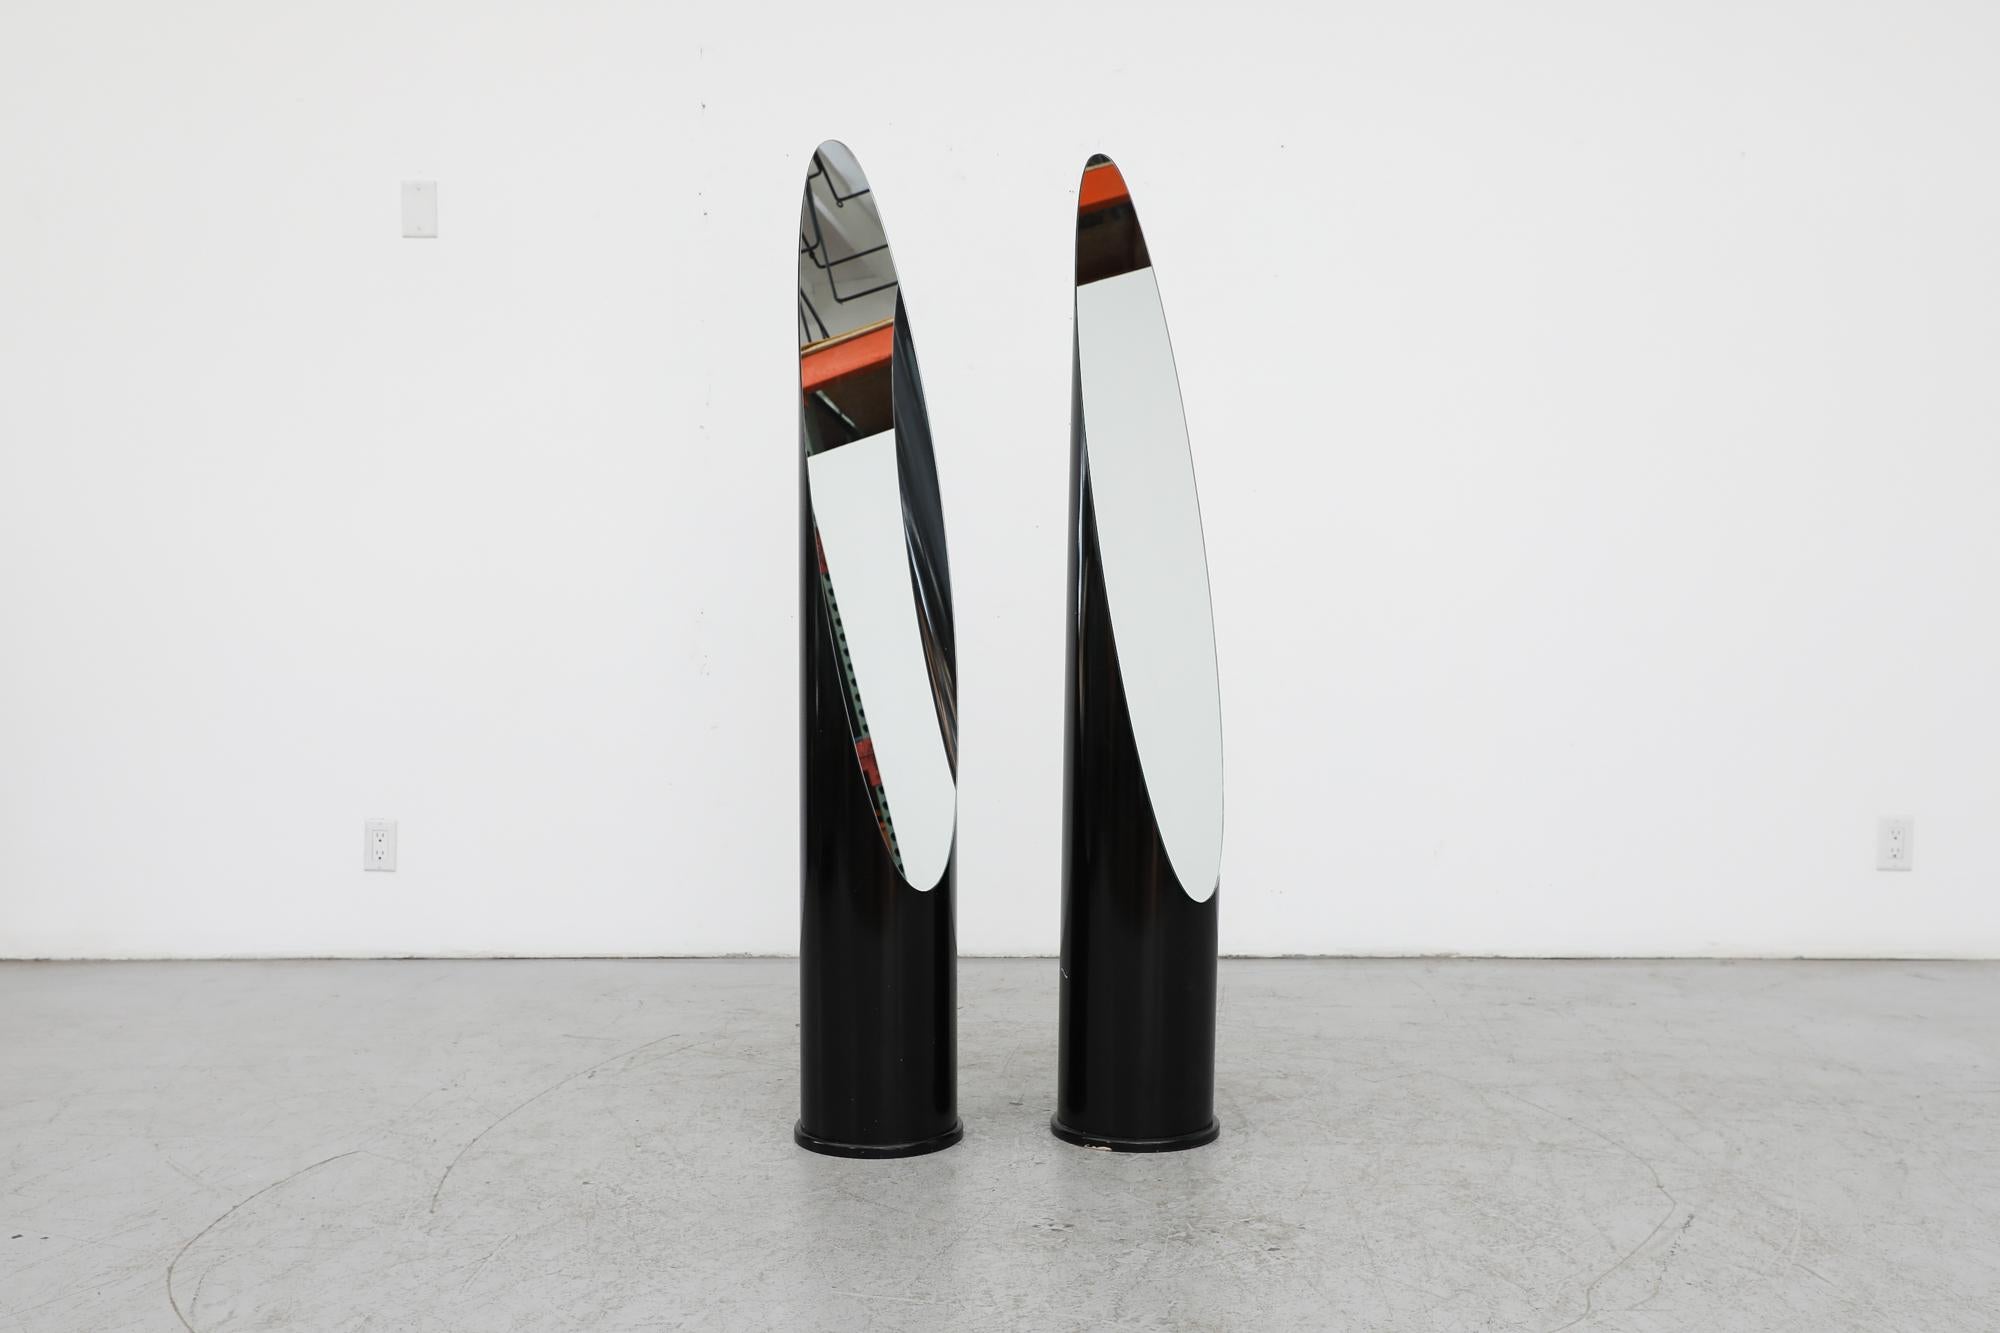 Roger Lecal Style 1970er Jahre schwarzer Lippenstift Spiegel. Lecal, auf dessen Arbeiten diese Arbeit basiert, arbeitete für Werbefirmen, bevor er 1958 sein eigenes Designbüro gründete. In den 1960er Jahren wurde er durch seine lebhaften, grafischen